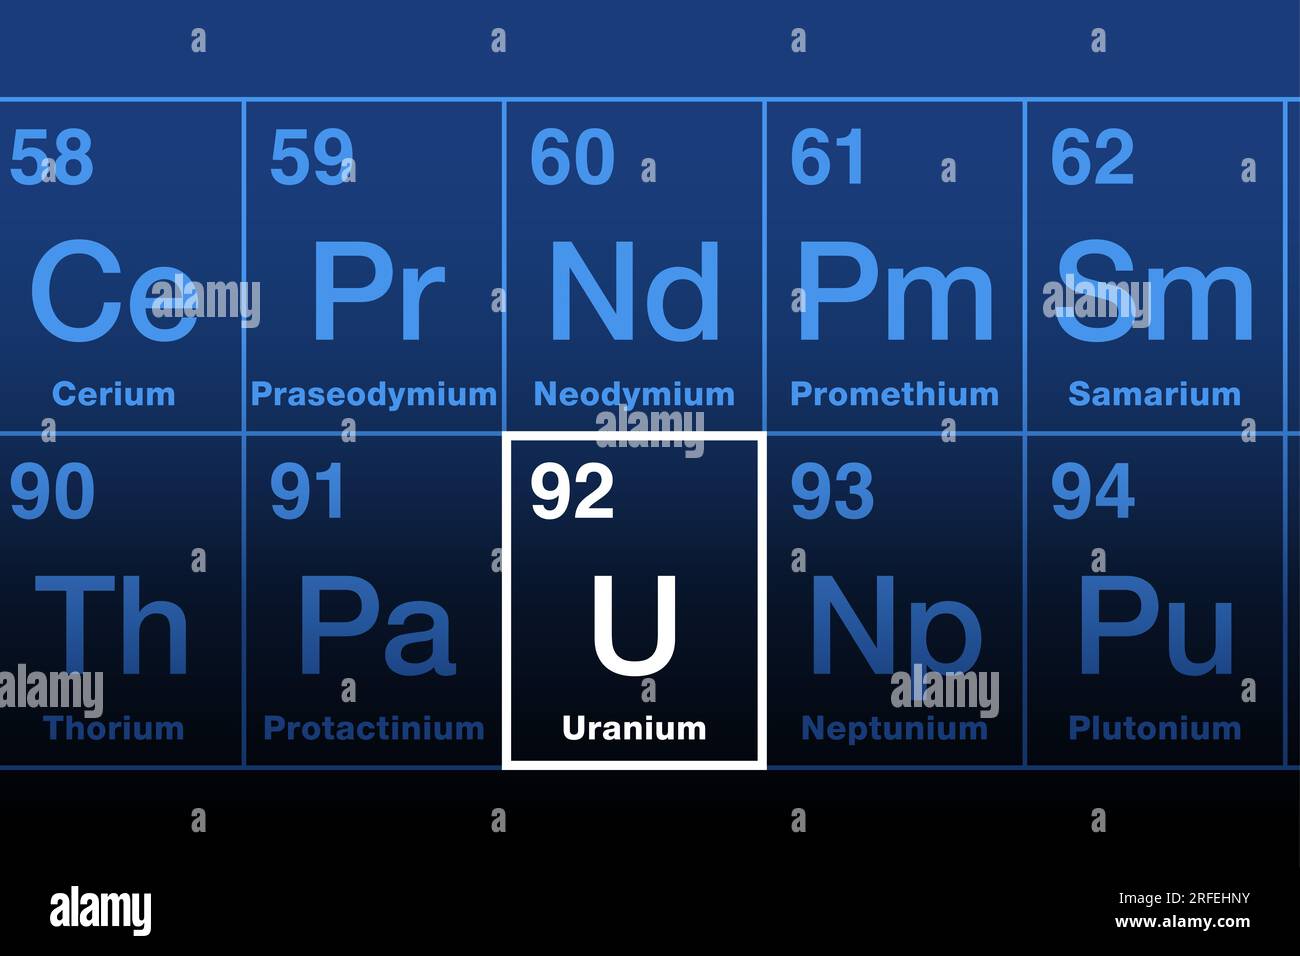 Uran auf dem Periodensystem der Elemente der Aktinidreihe. Radioaktives Metall mit der Atomnummer 92 und dem Elementsymbol U, benannt nach Uranus. Stockfoto